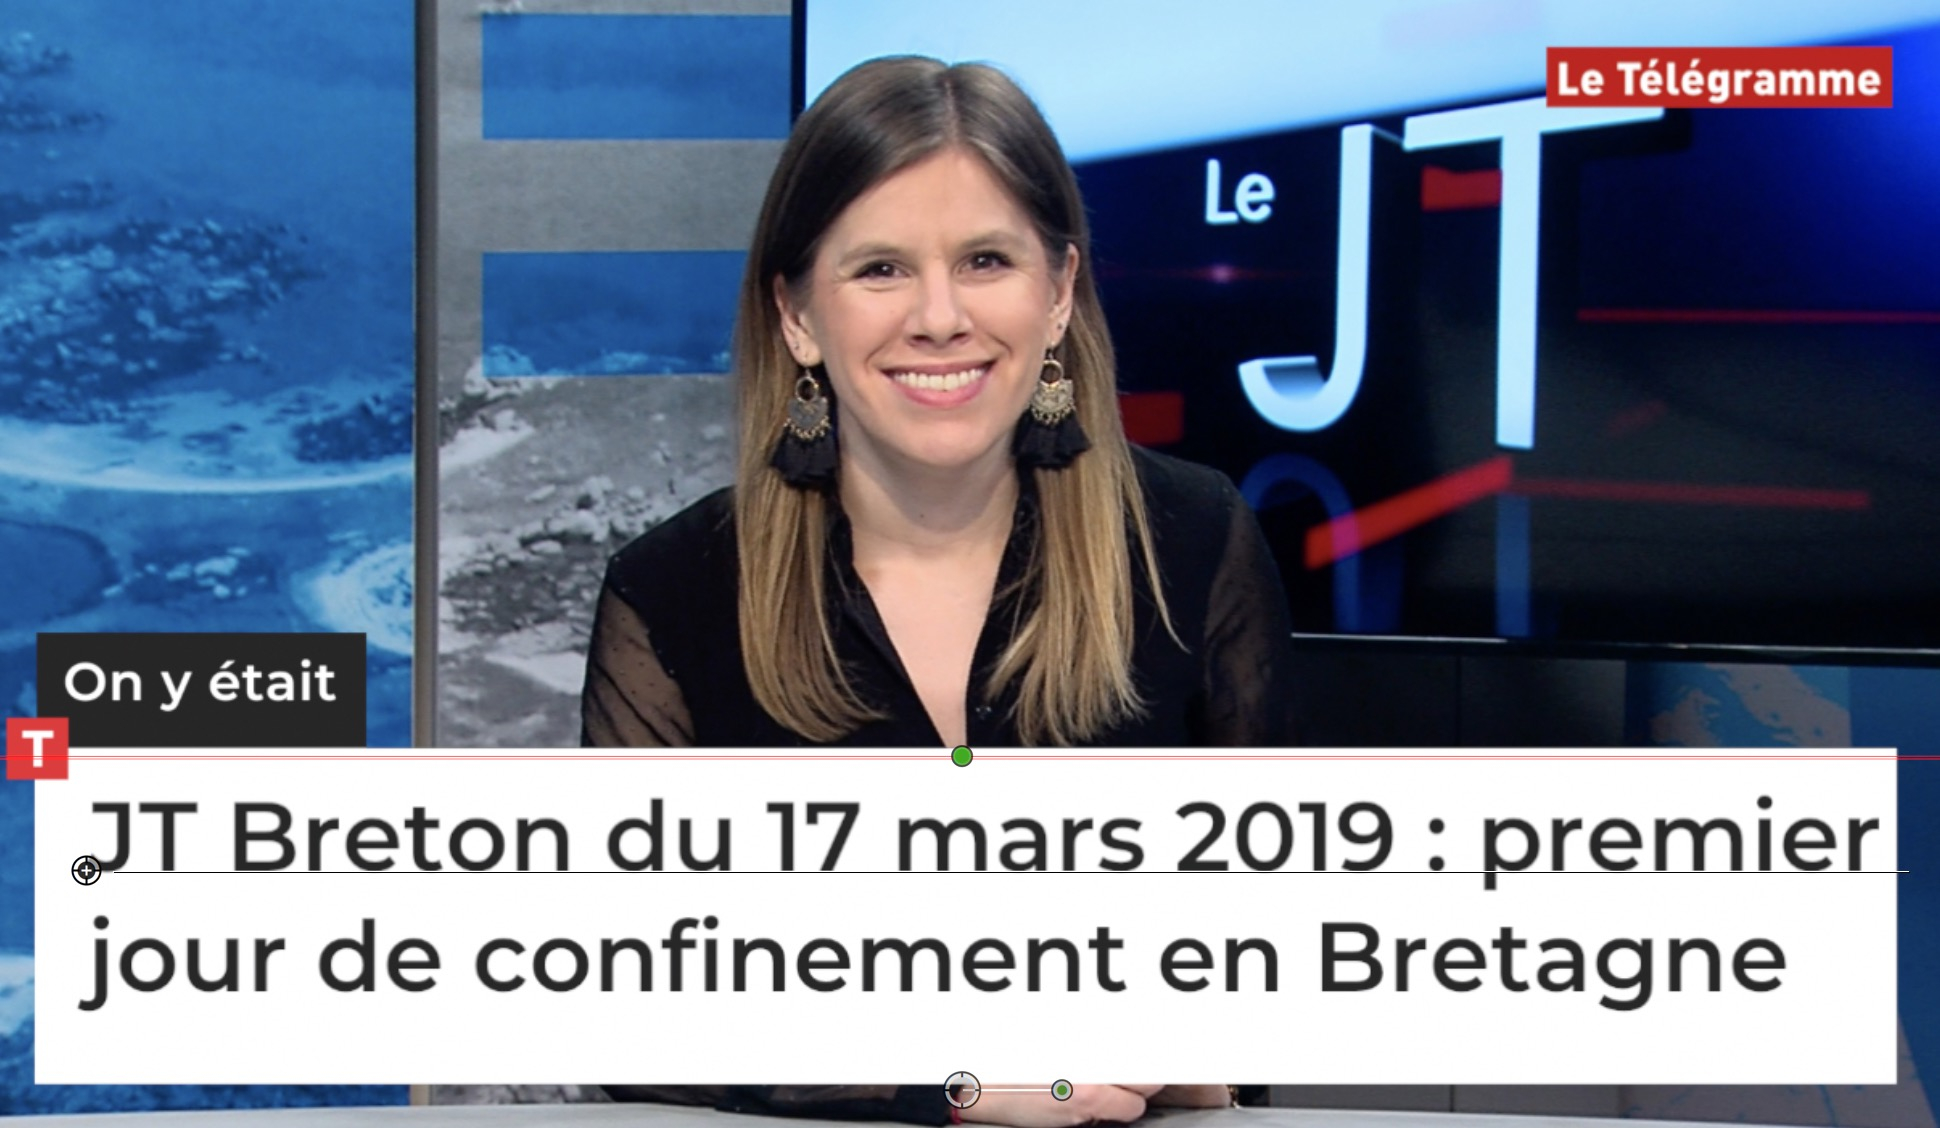  JT Breton du 17 mars 2019 : premier jour de confinement en Bretagne (Le Télégramme)